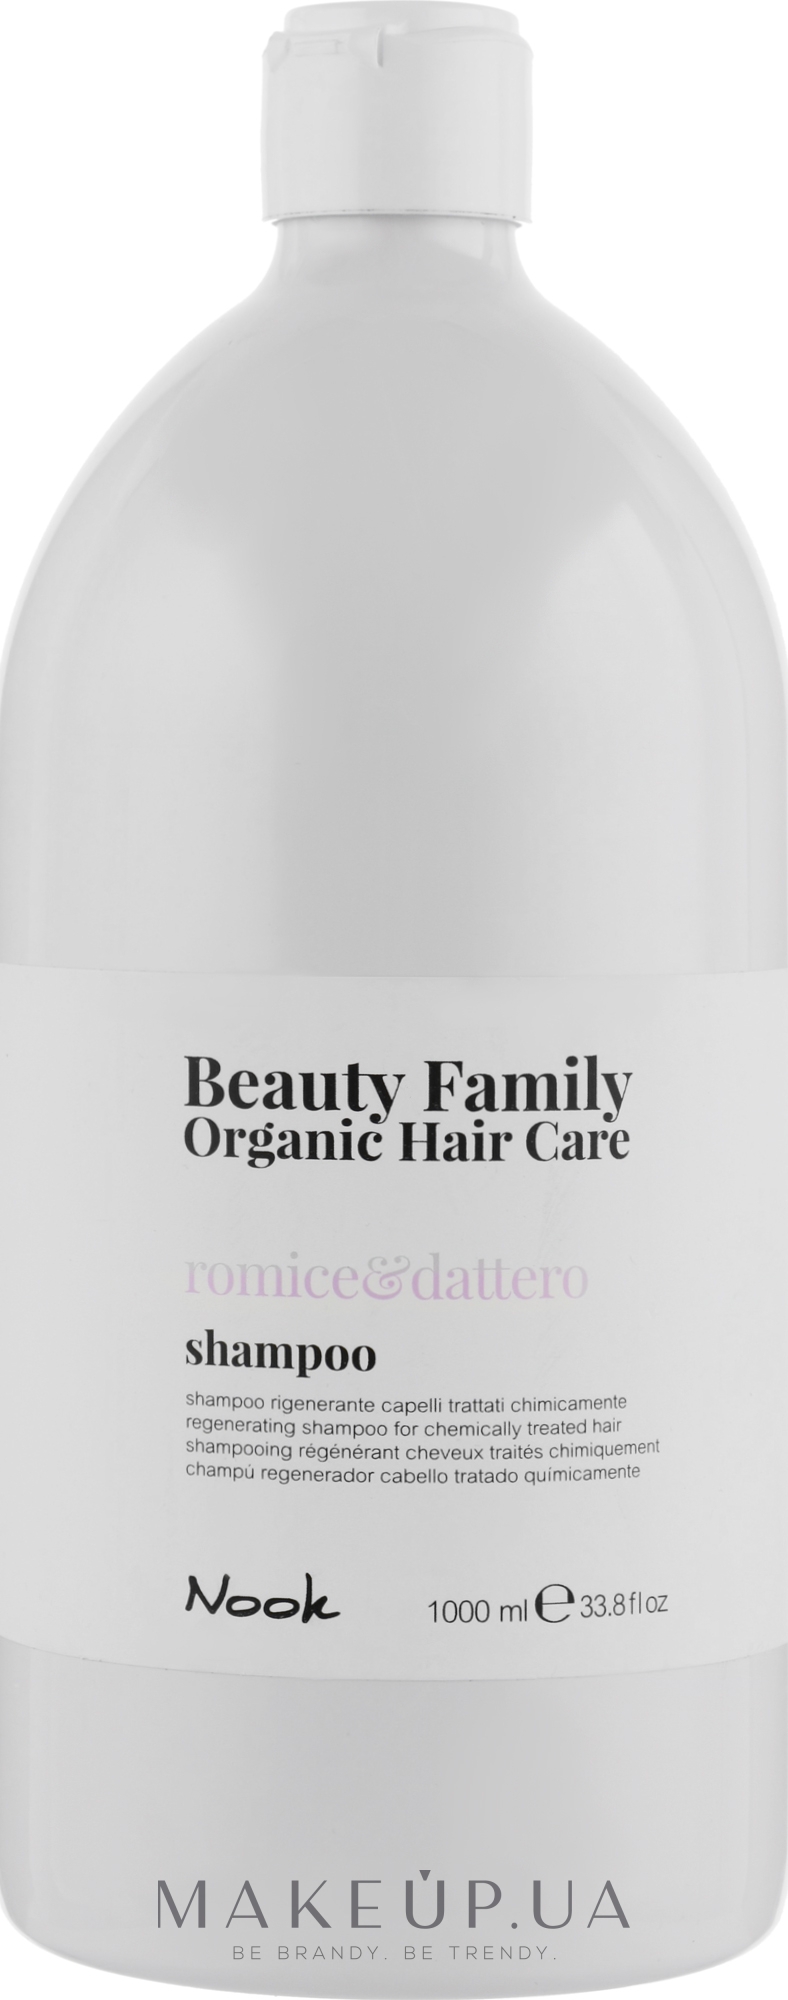 Шампунь для окрашенных и поврежденных волос - Nook Beauty Family Organic Hair Care — фото 1000ml